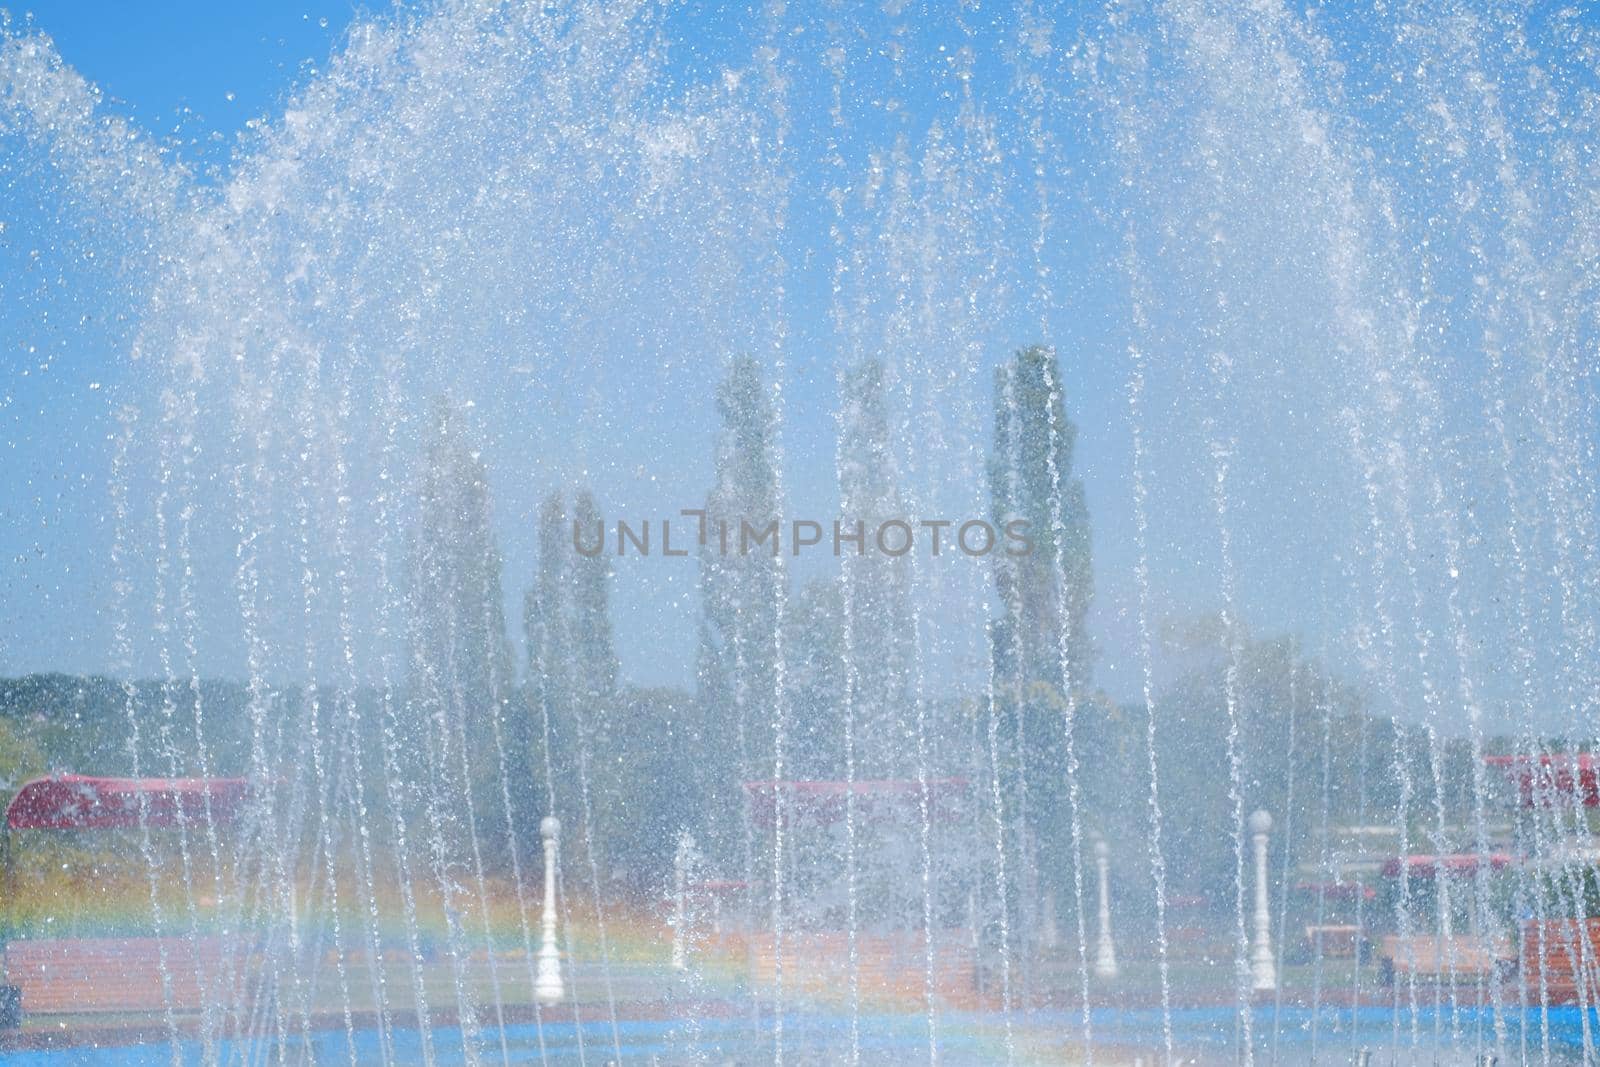 artesian fountain on blue sky with rainbow